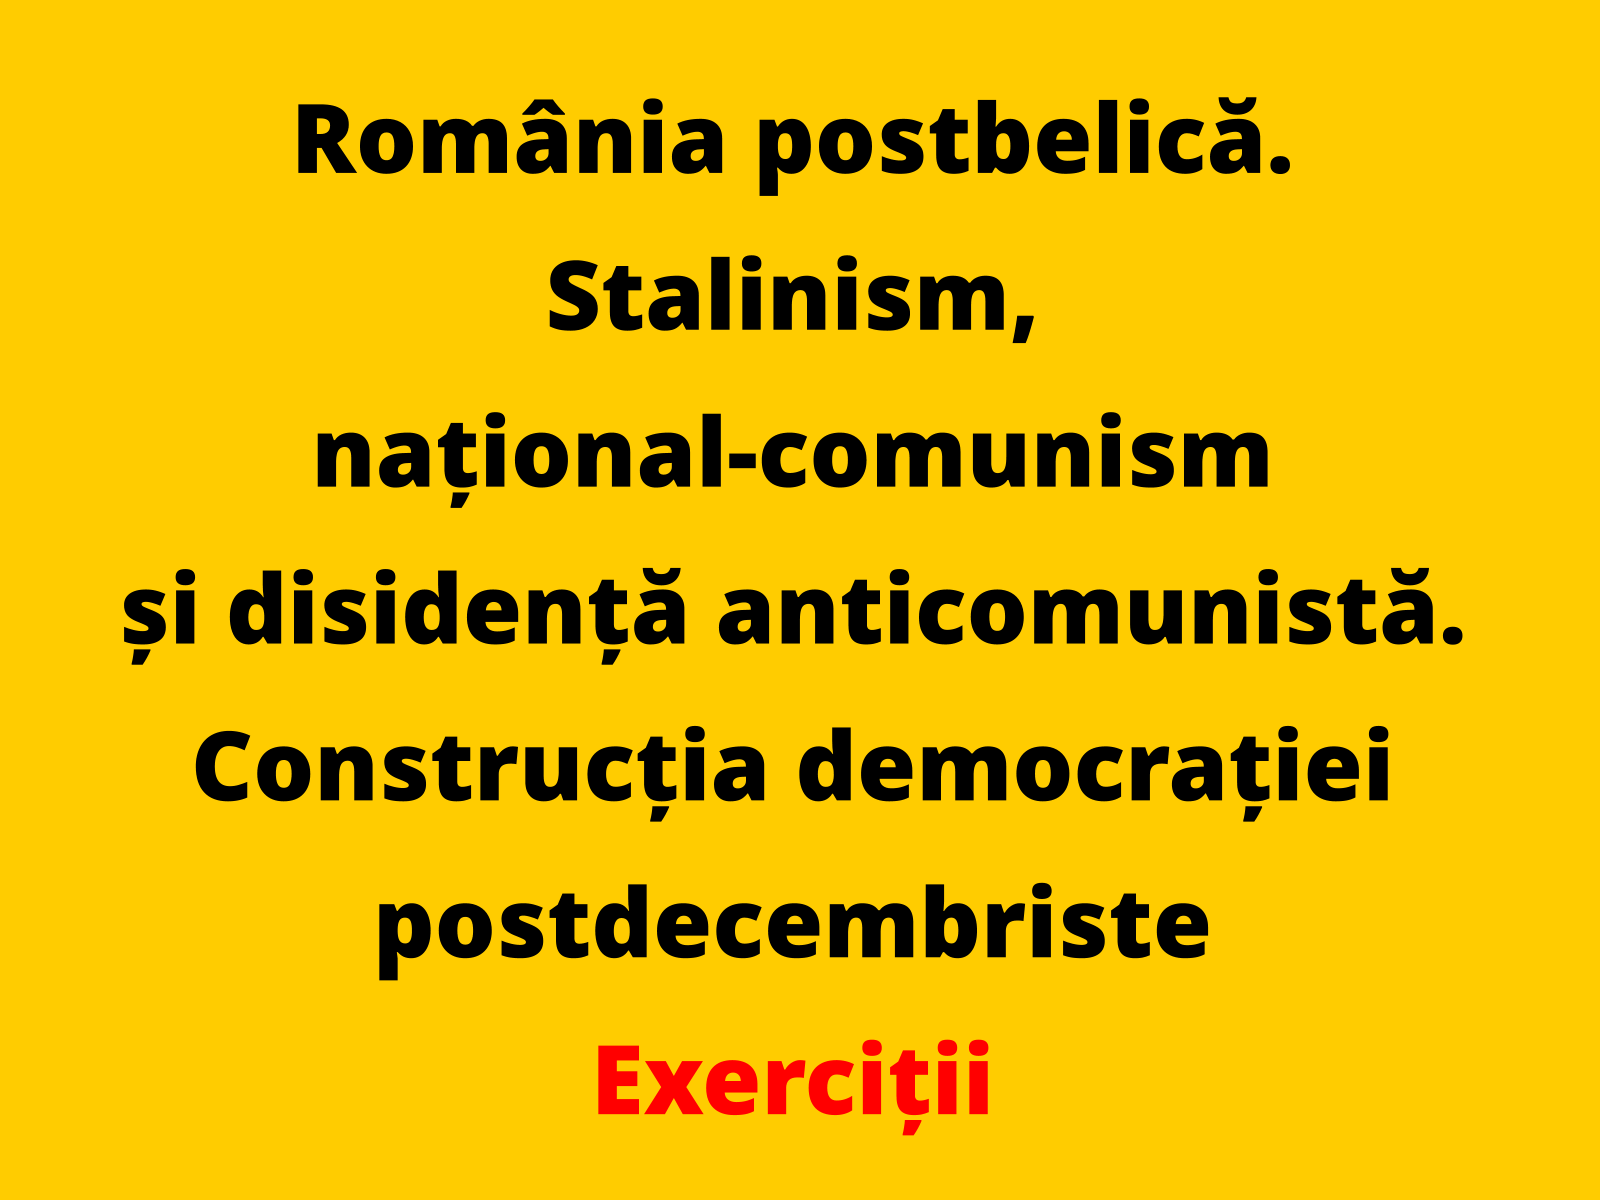 Prezentați două fapte istorice din politica internă a României, desfășurată în perioada 1948-1962